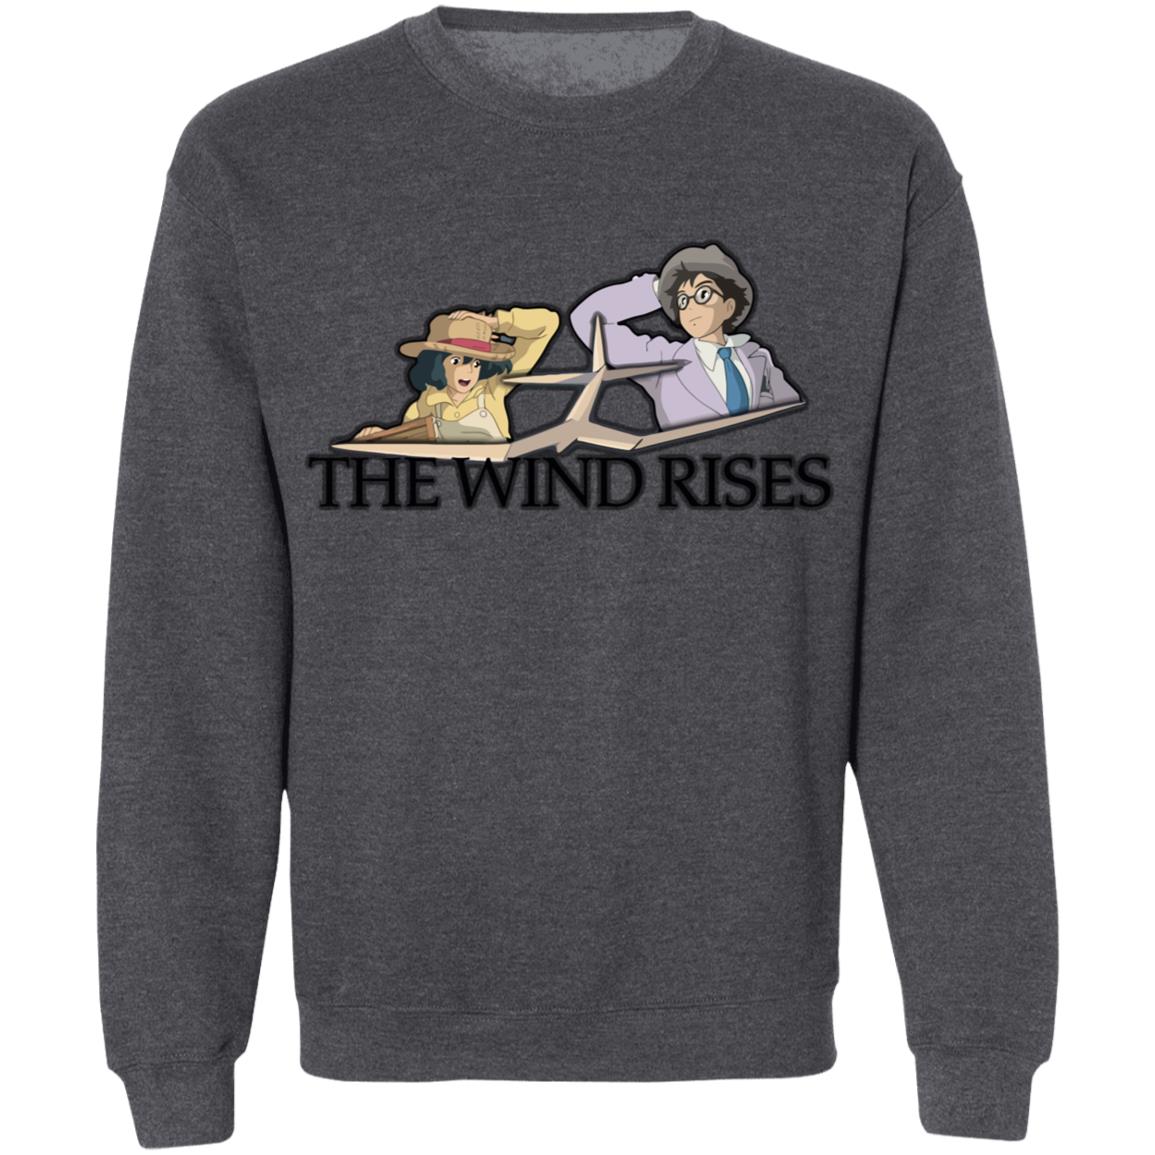 The Wind Rises - Airplane Sweatshirt - Ghibli Store